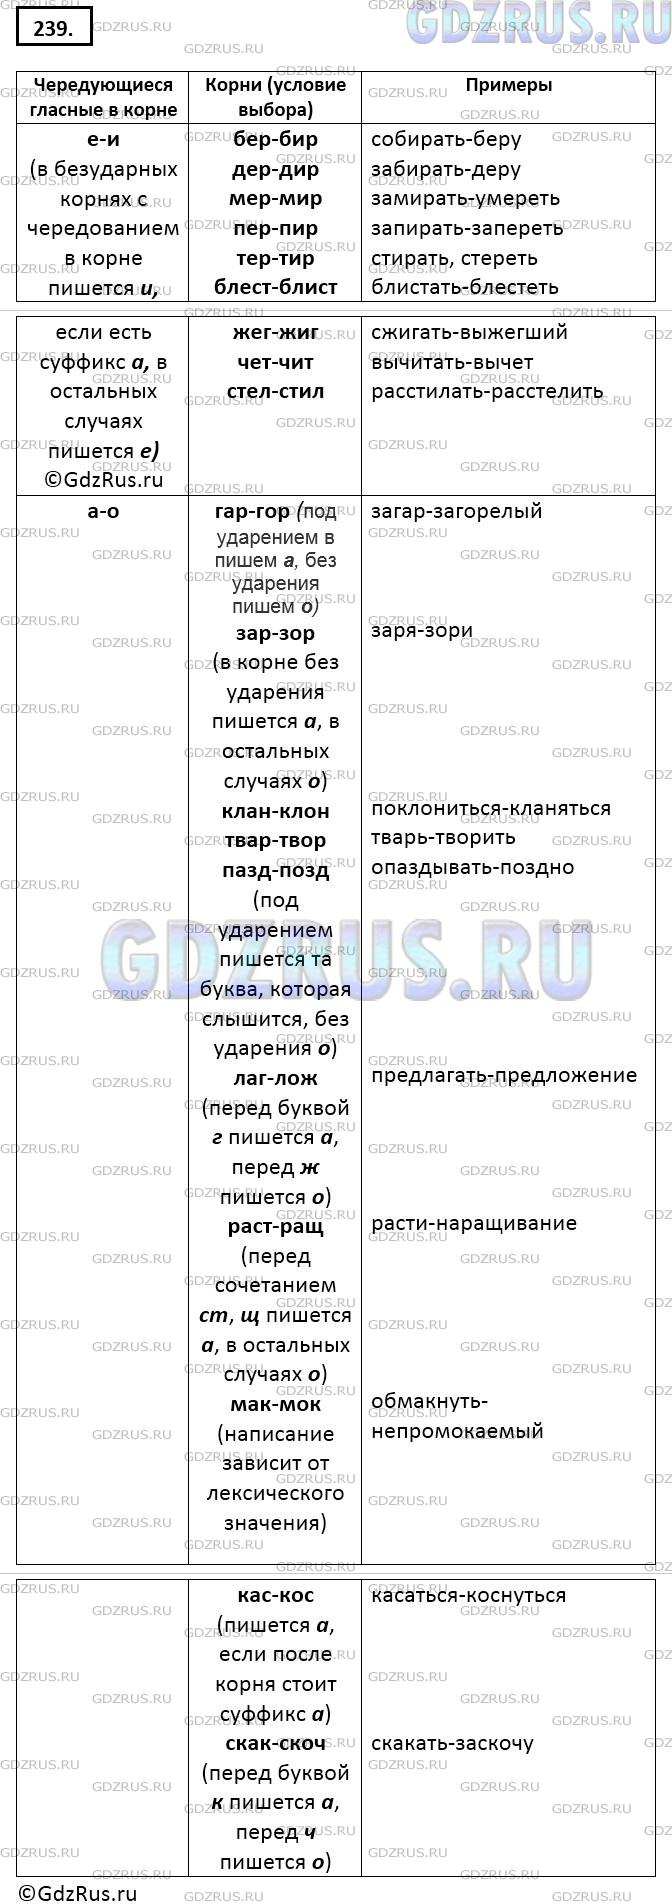 Фото решения 5: ГДЗ по Русскому языку 9 класса: Ладыженская Упр. 239